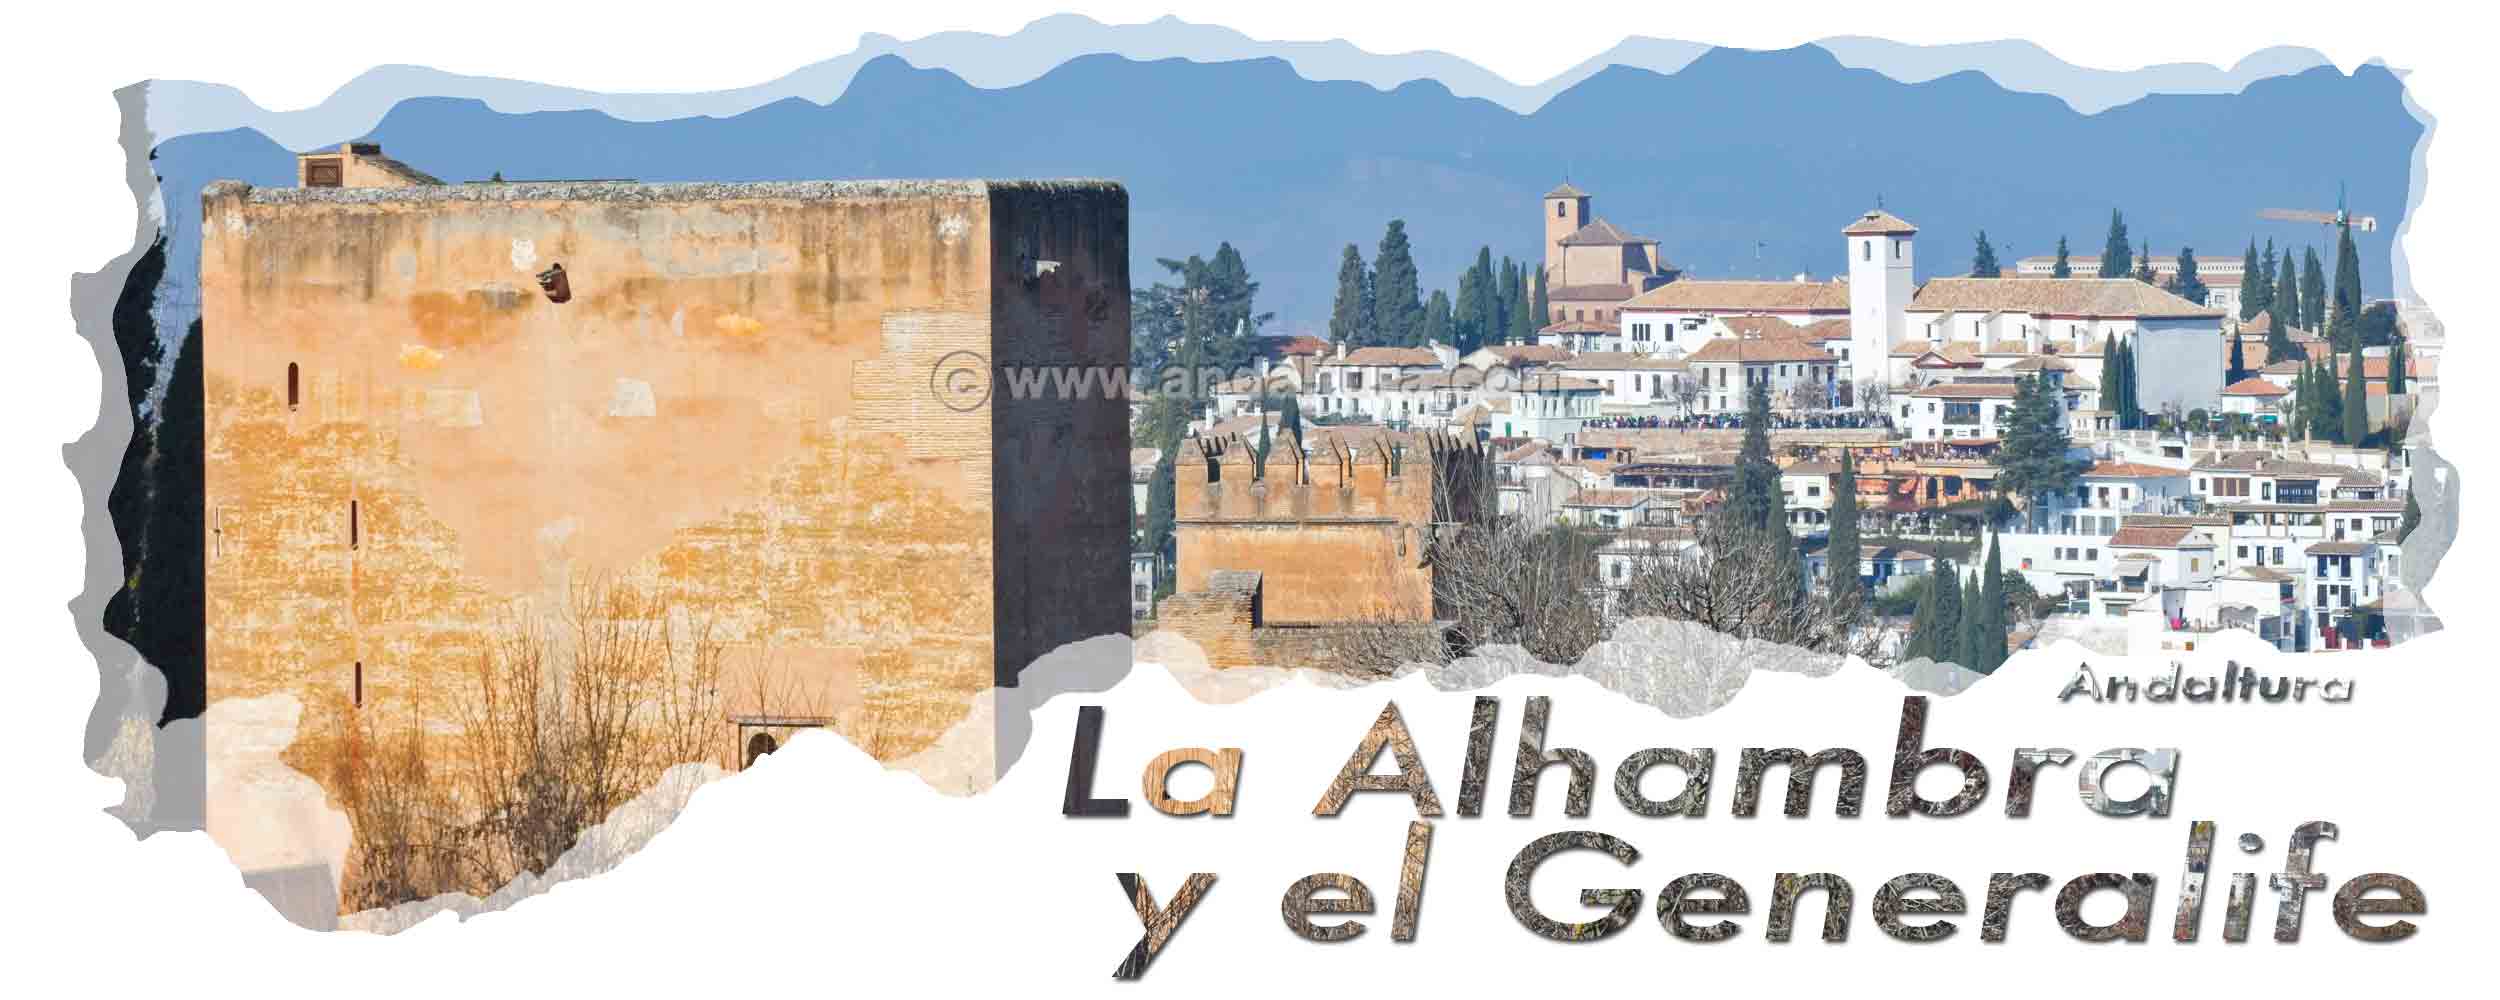 Cabecera de la Puerta del Bosque de la Alhambra - Torre de la Cautiva, del Cadí y de los Picos, al fondo las Iglesias de San Nicolás y San Cristóbal del Albaicín